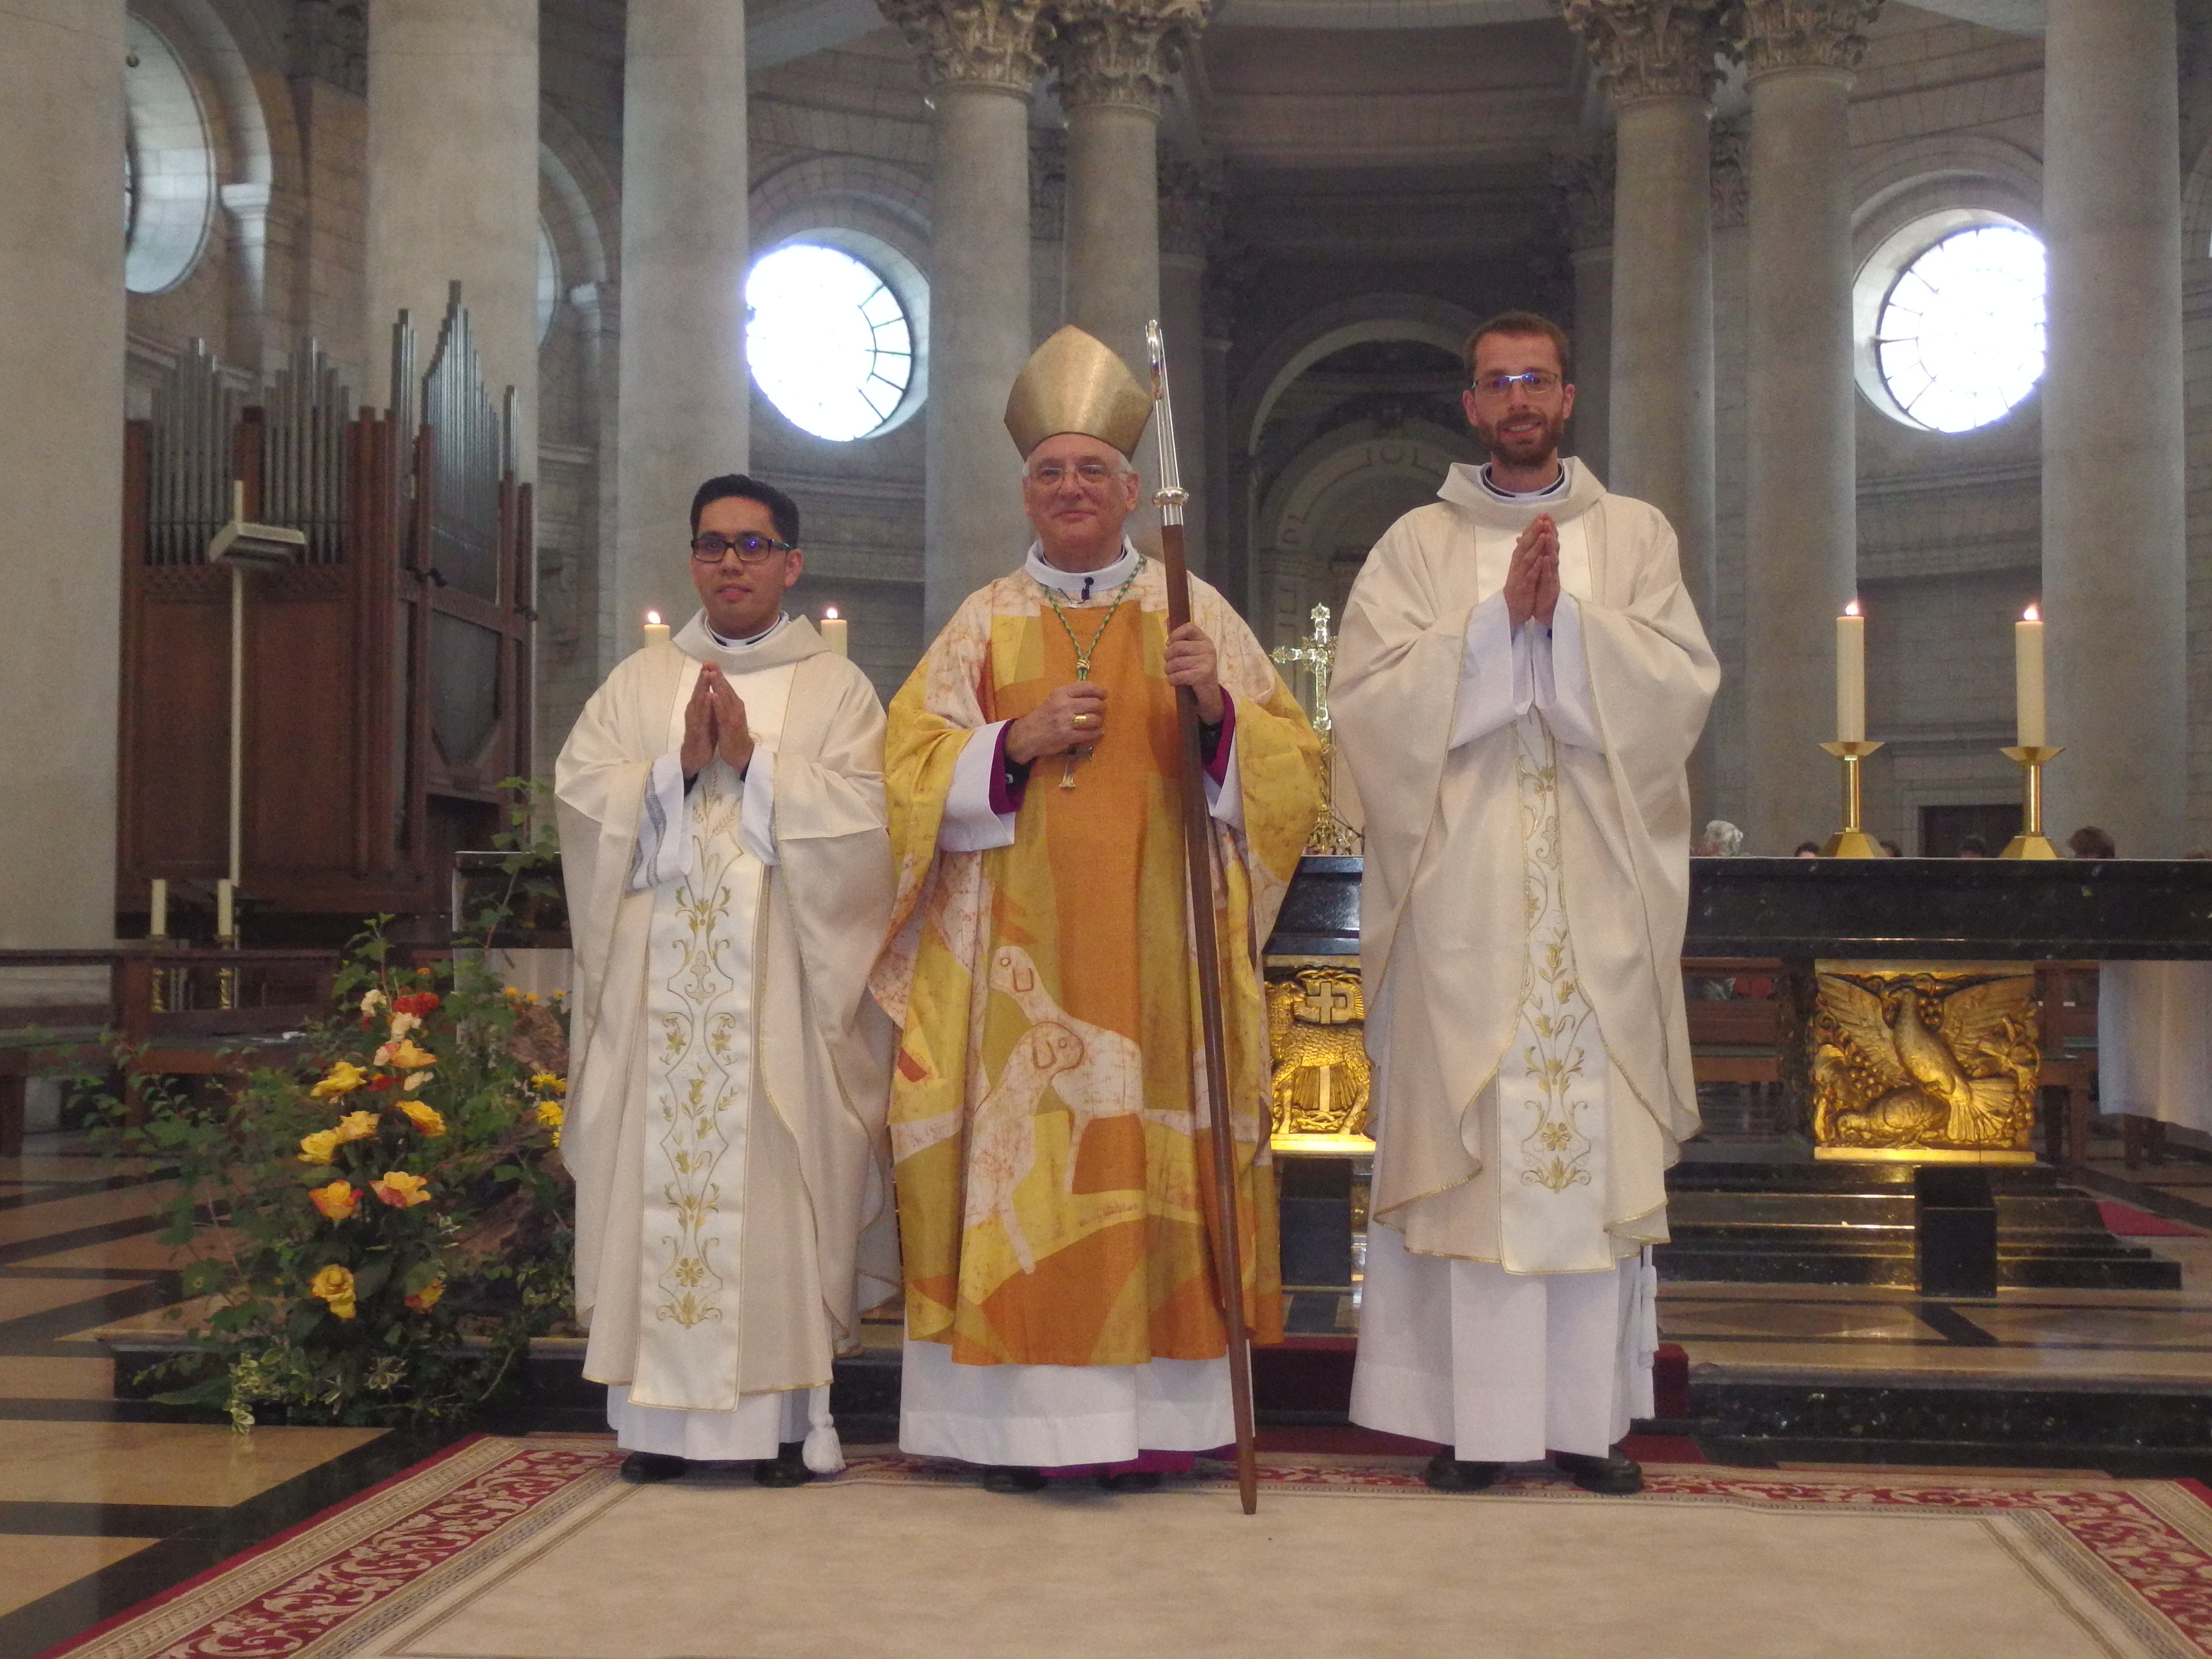 Msg Jaeger entouré des deux nouveaux prêtres ordonnés :